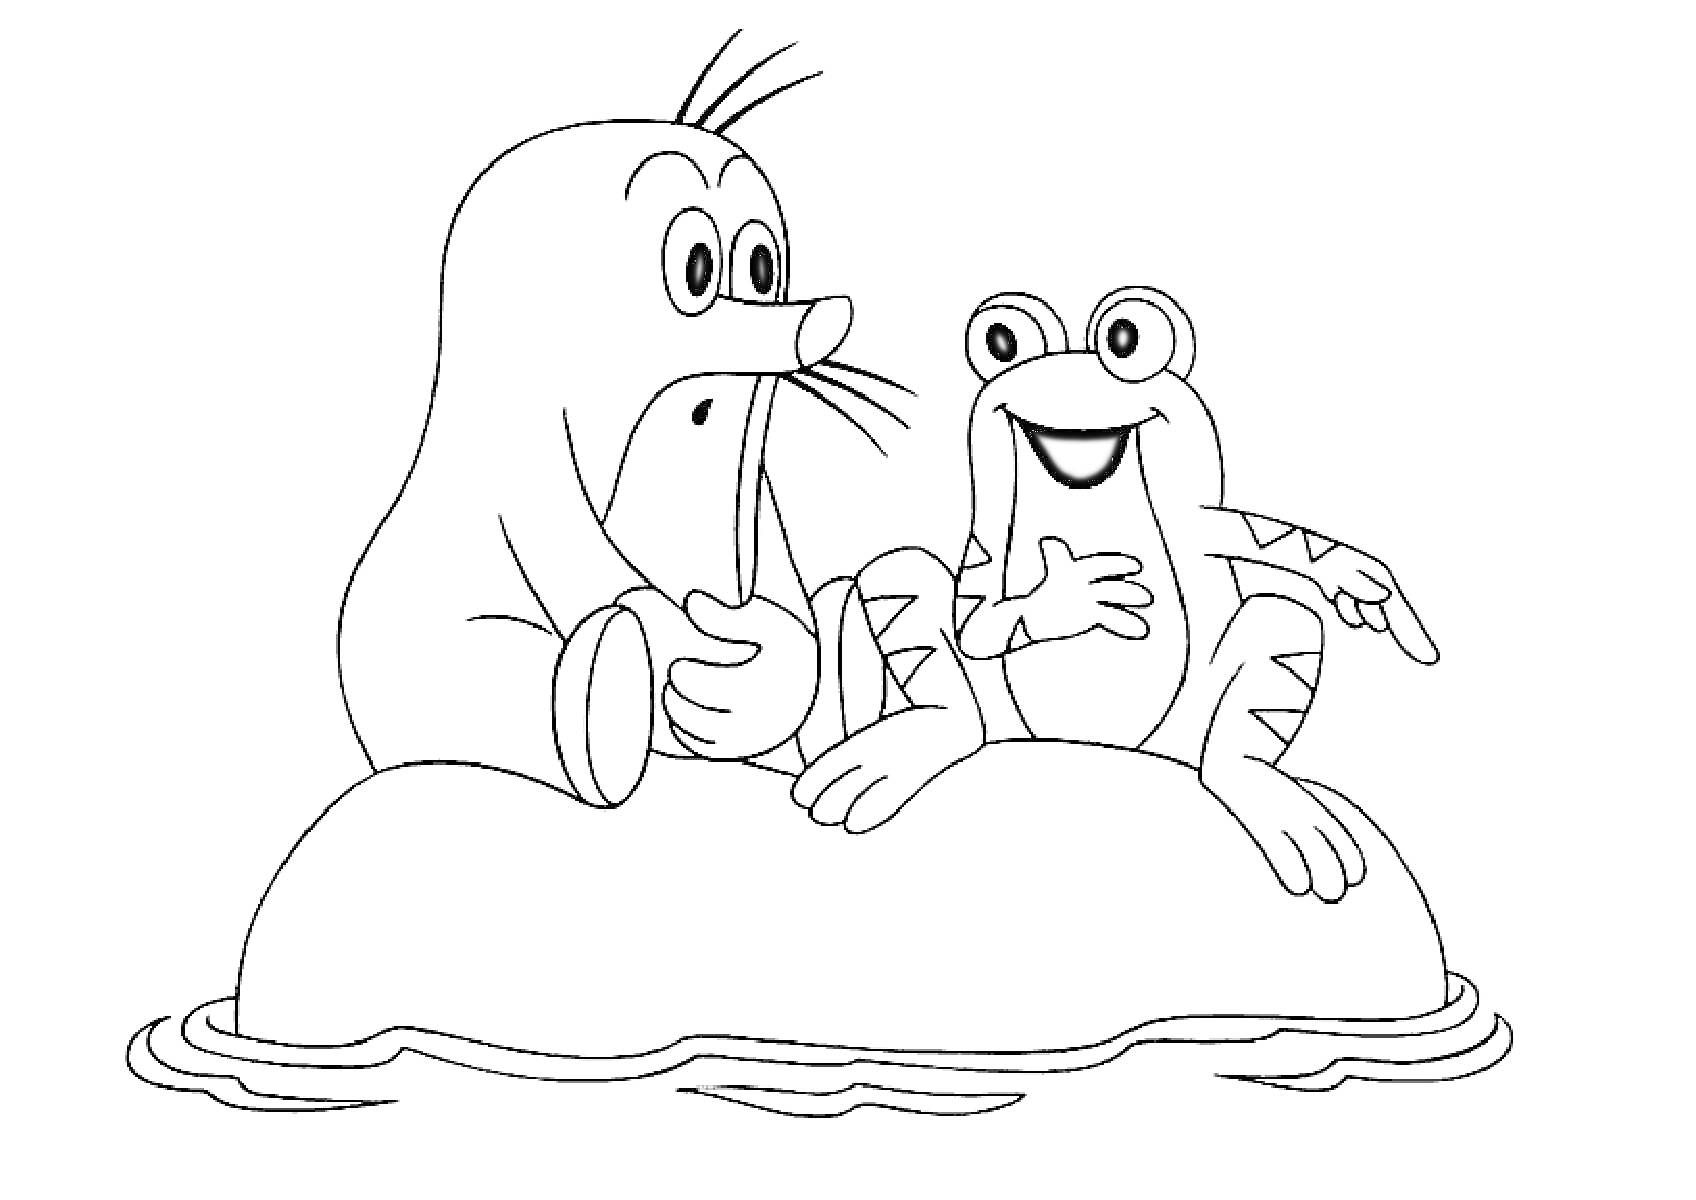 Раскраска Крот и лягушка сидят на камне посреди воды